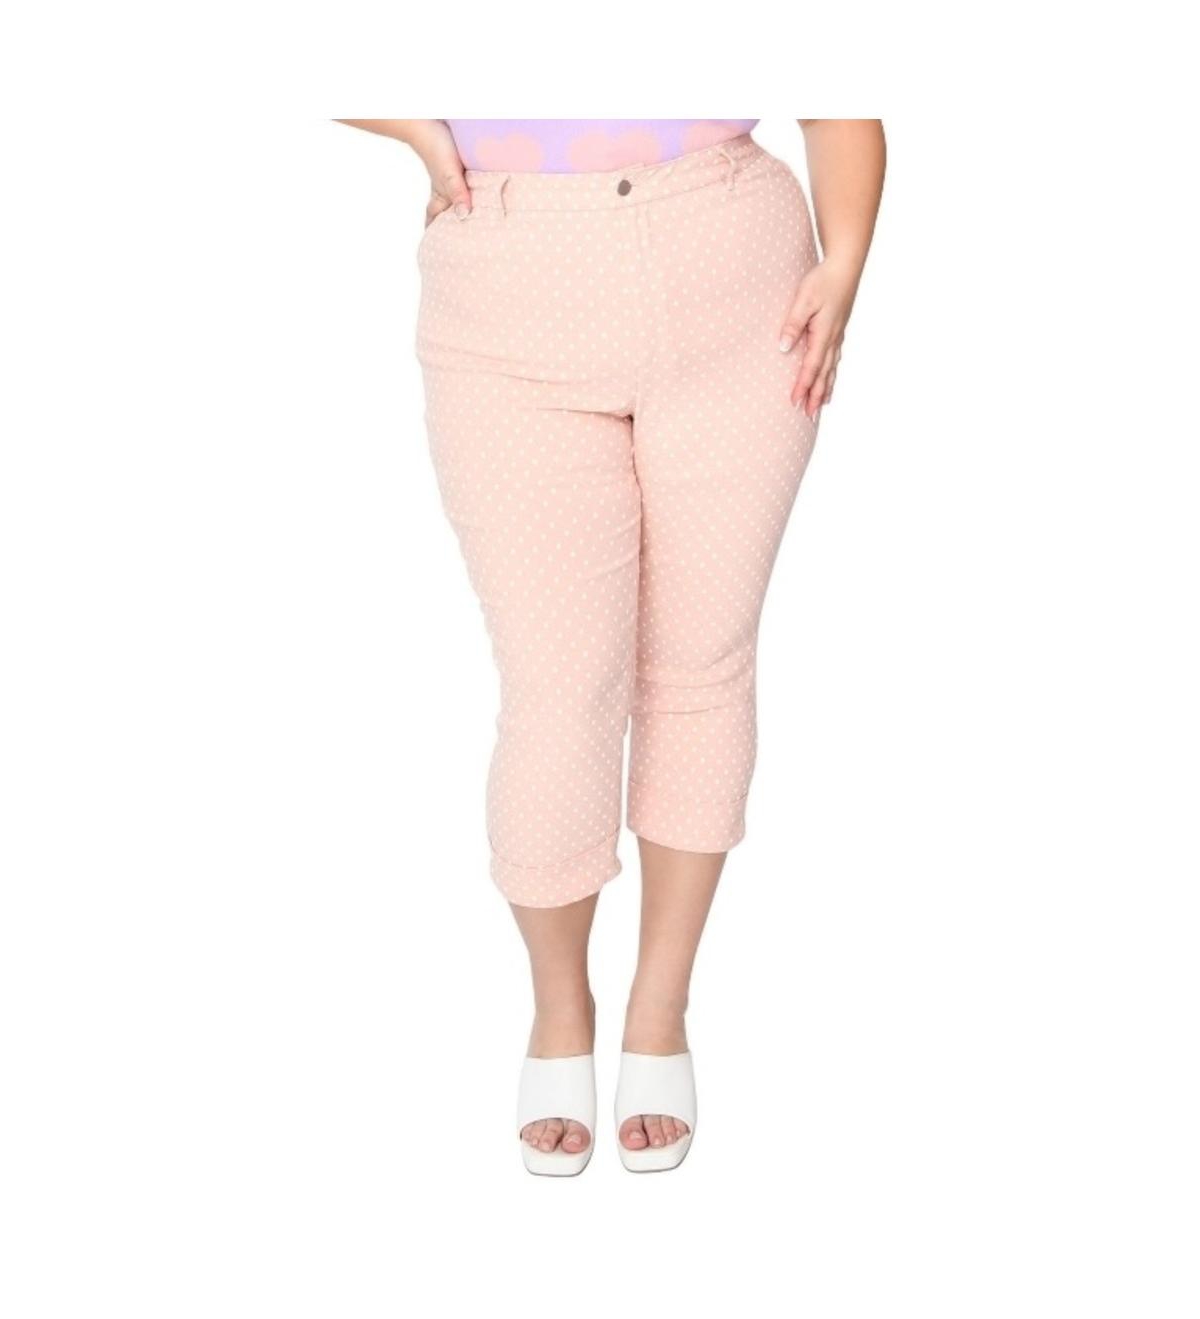 Plus Size Pink & White Pin Dot Heart Pocket Rachelle Capri Pants - Light pink/white pin dot